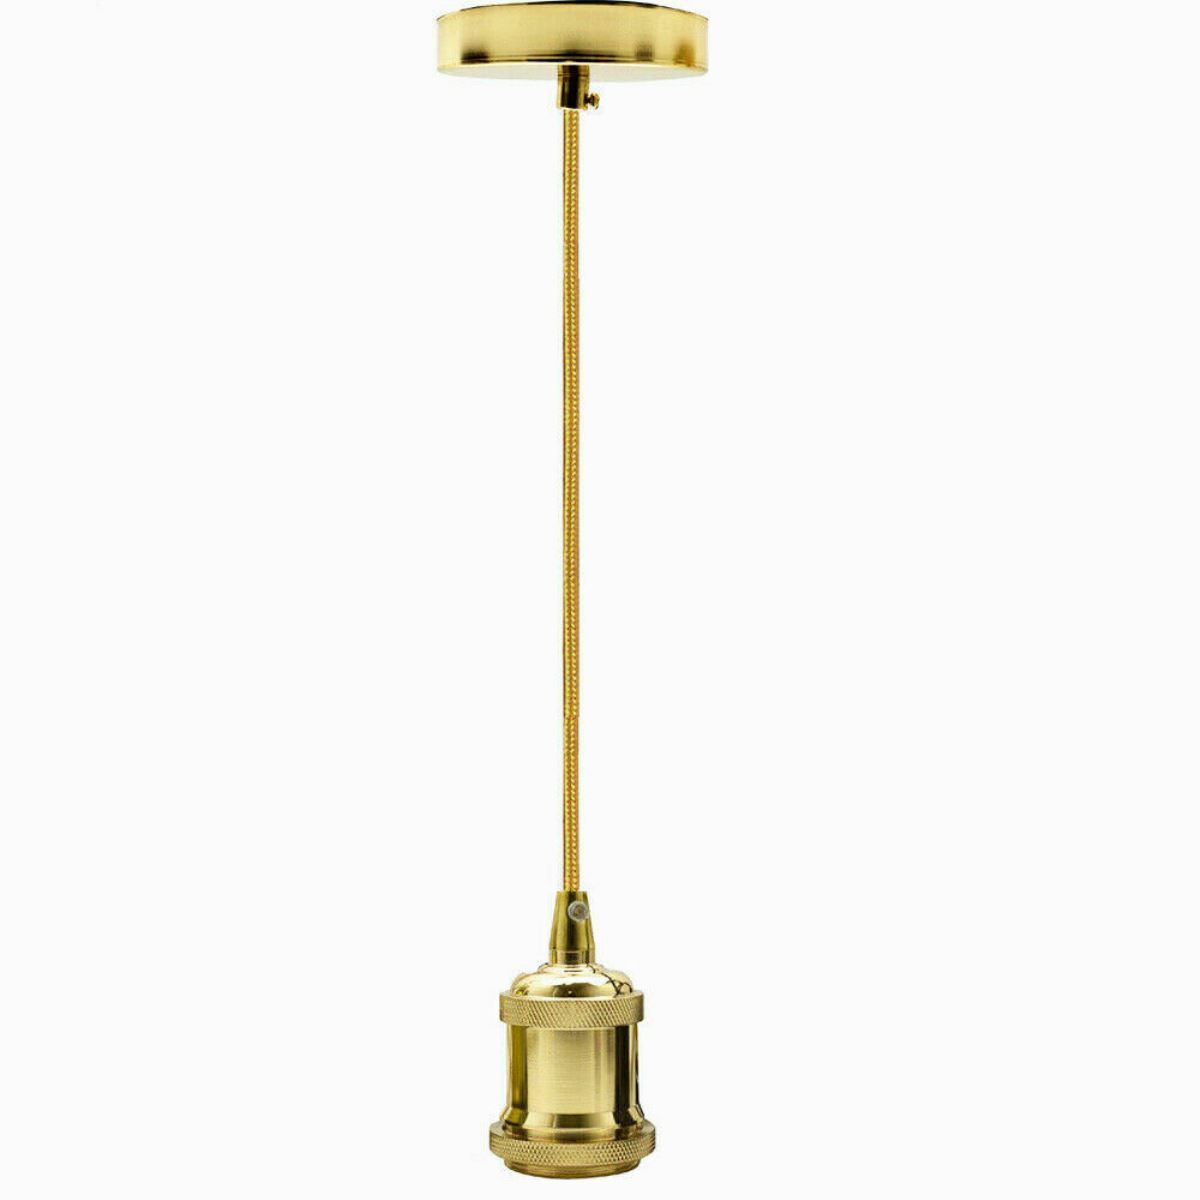 1m Pendant Light With E27 Base French Gold Holder~1701 - LEDSone UK Ltd